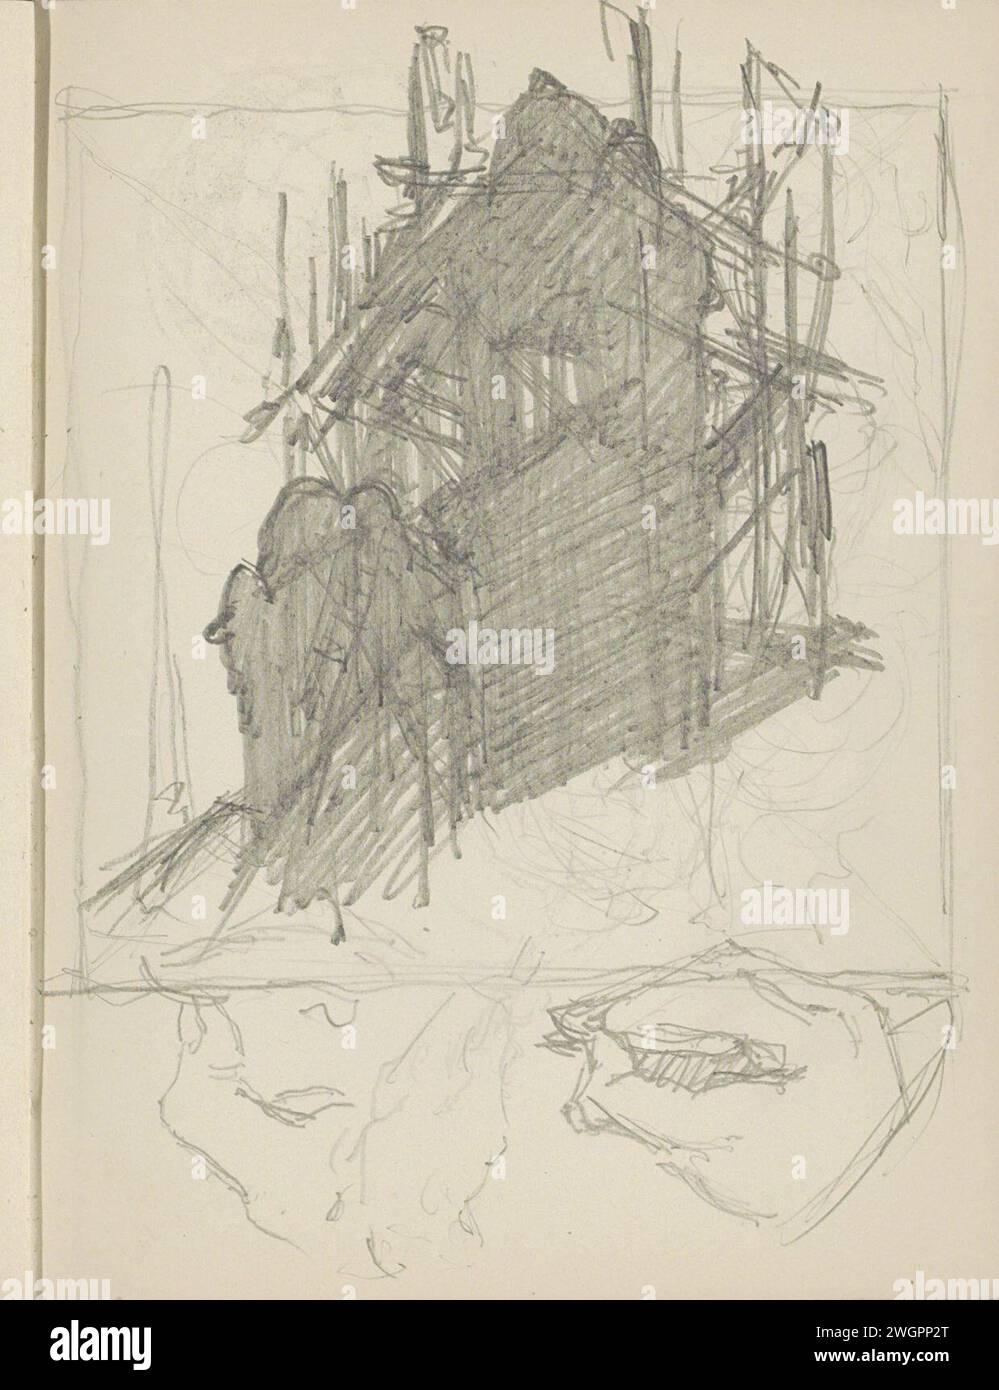 Turm im Gerüst, 1906 - 1945 auch Handstudien. Seite 58 Recto aus einem Skizzenbuch mit 69 Blättern. Papier. Bleistiftturm (Haus oder Gebäude). Gerüst ( Bauarbeiten). Hand Stockfoto